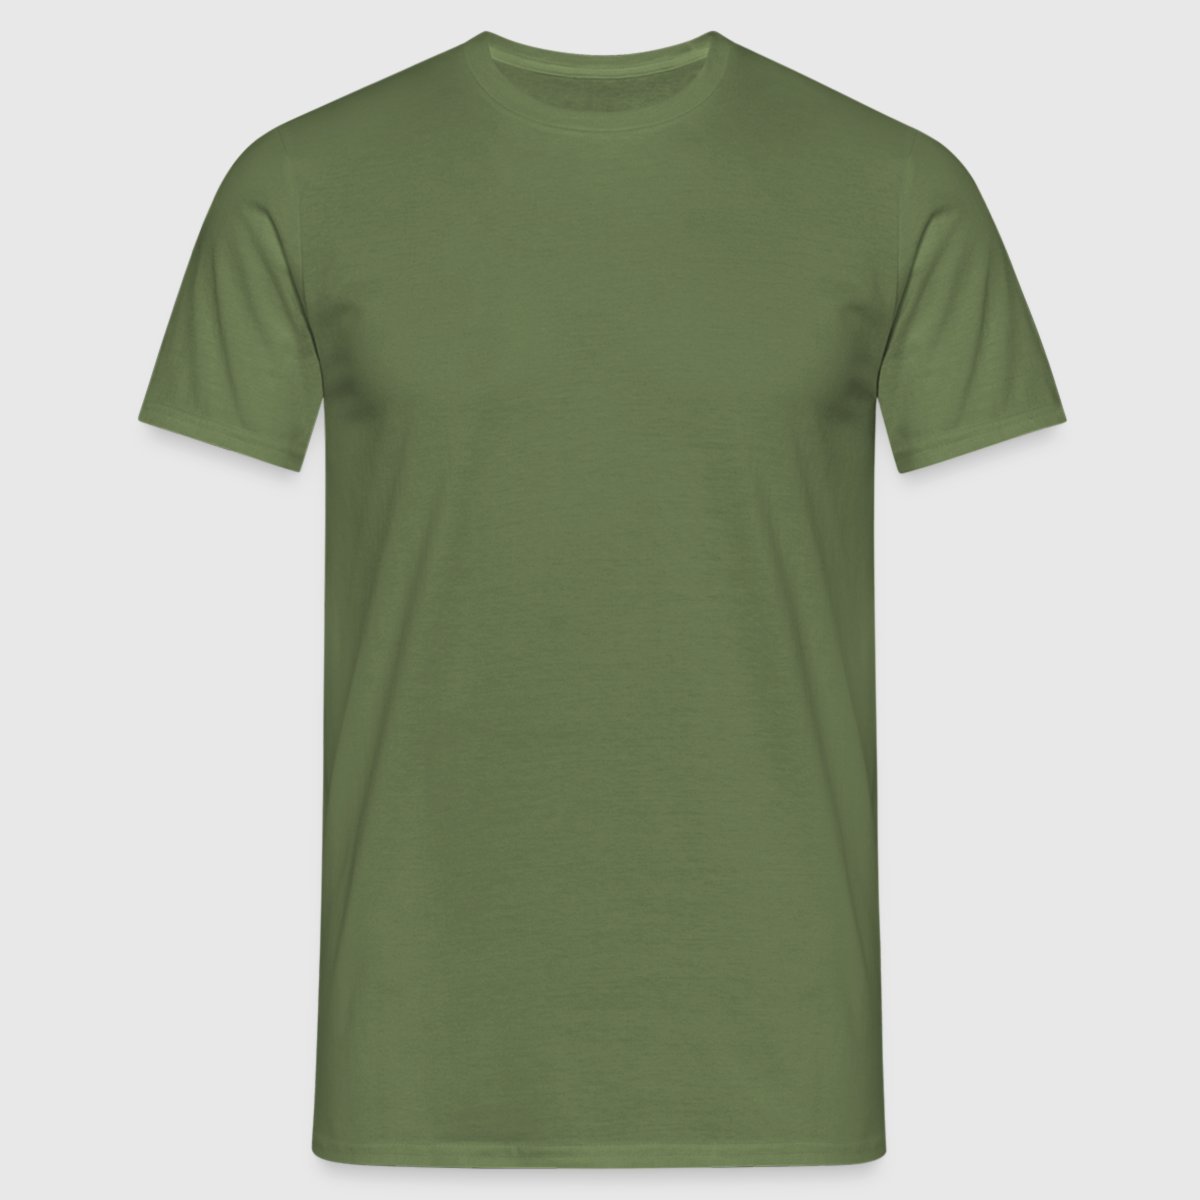 Männer T-Shirt - Vorne